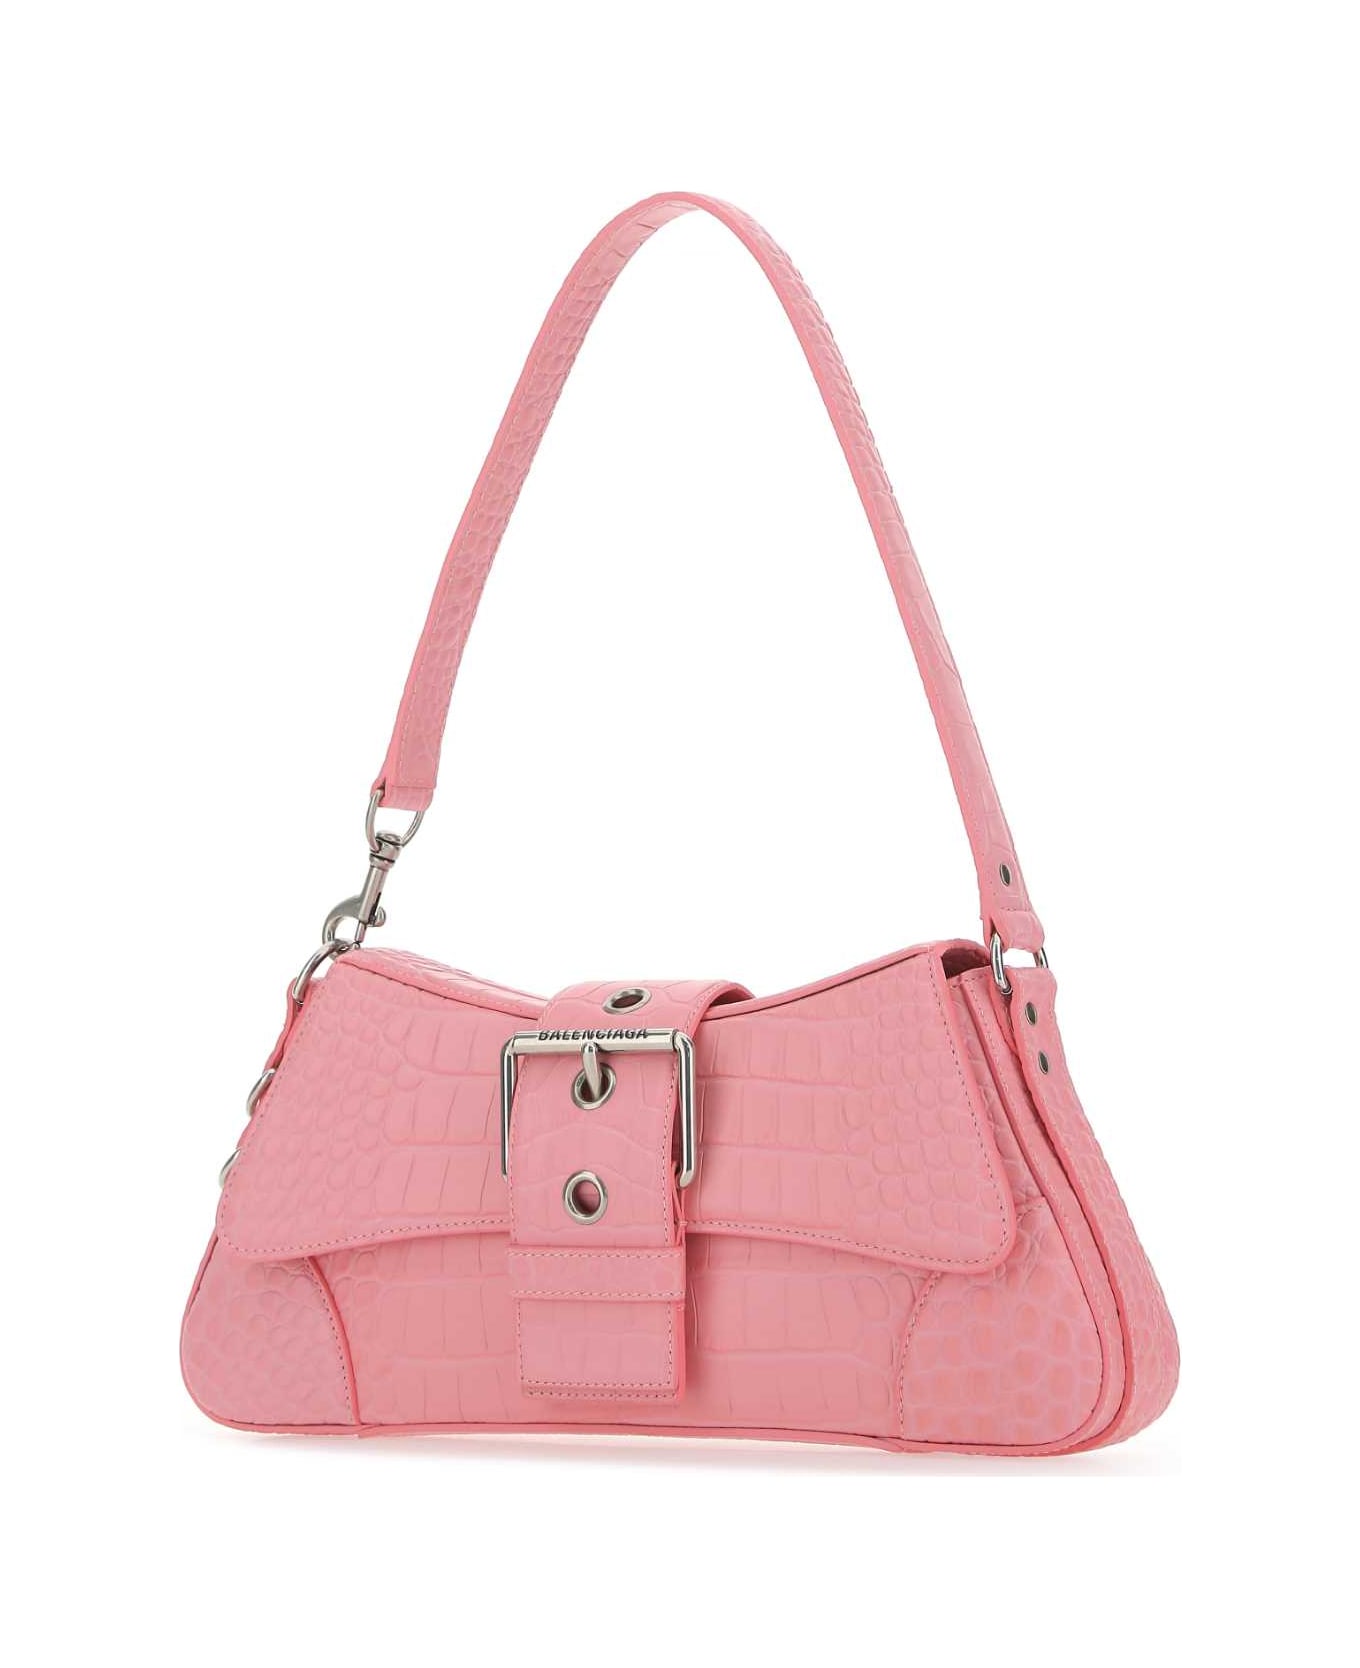 Balenciaga Pink Leather Lindsay M Shoulder Bag - 5812